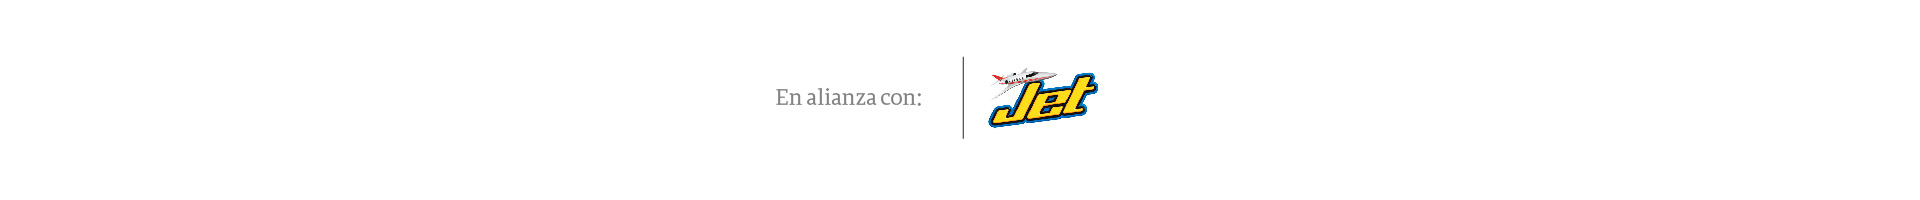 Jet, más de 60 años moviendo el corazón de los colombianos - Especial Semana